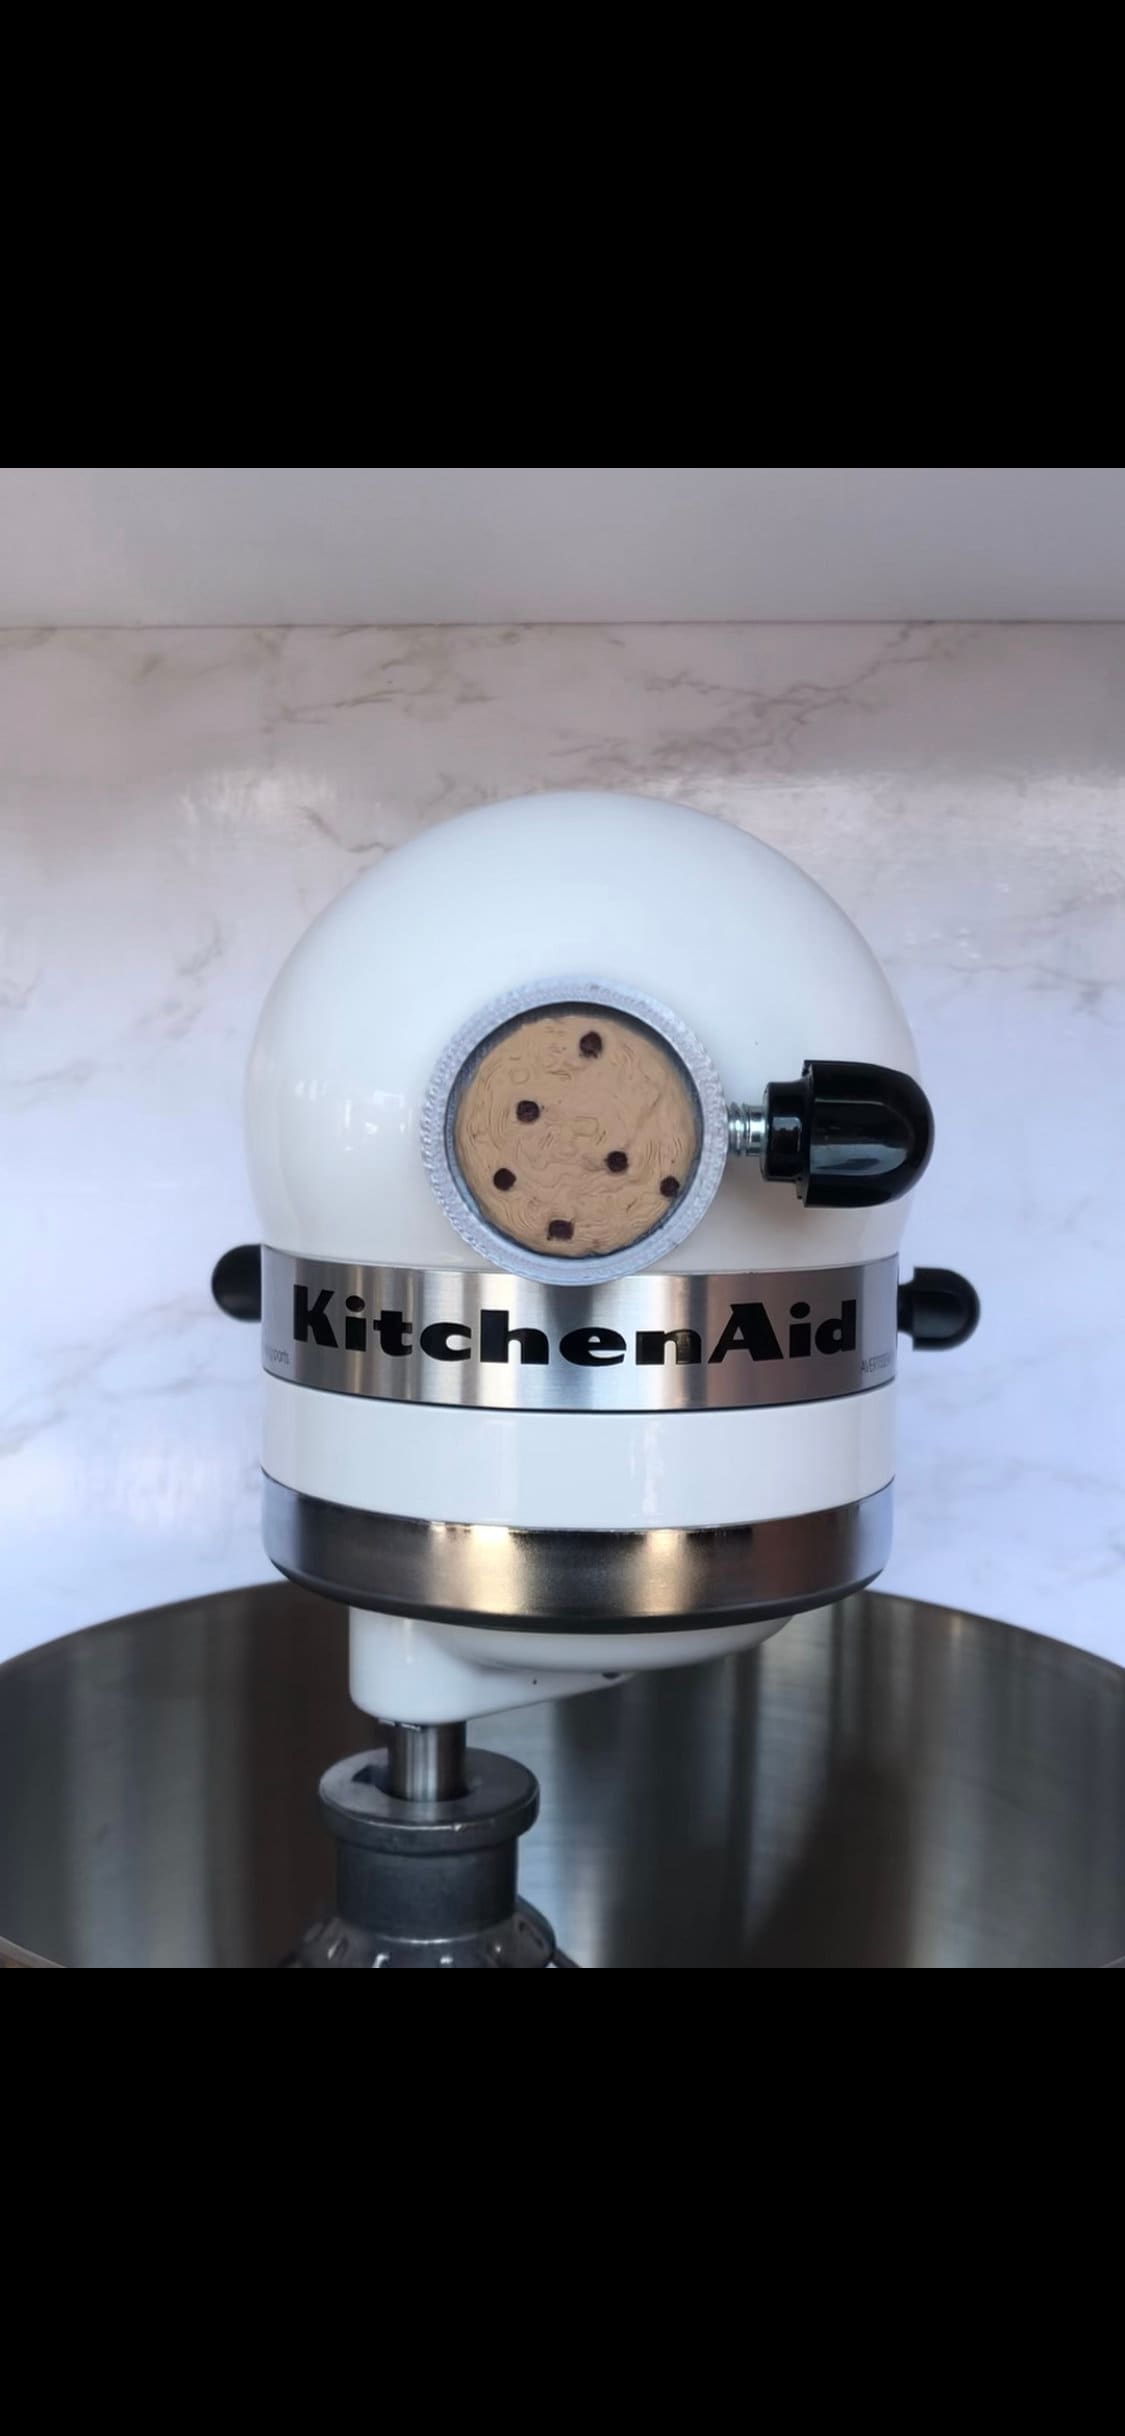 KitchenAid Chef Hat Vinyl Decals- Set of 9 · Vinyl Designs by DW